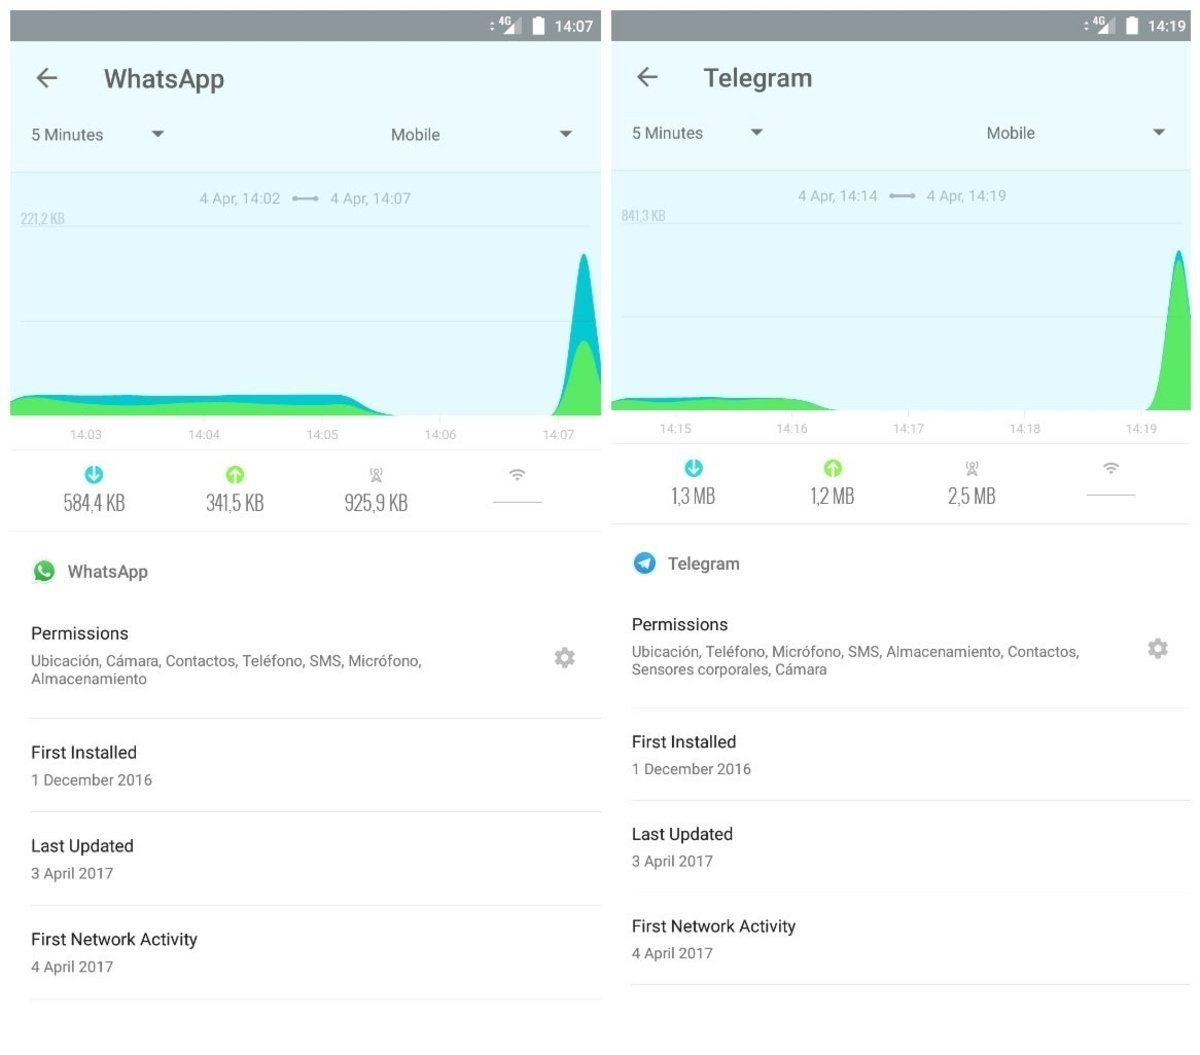 Comparativa de consumo de datos entre las llamadas de WhatsApp y Telegram